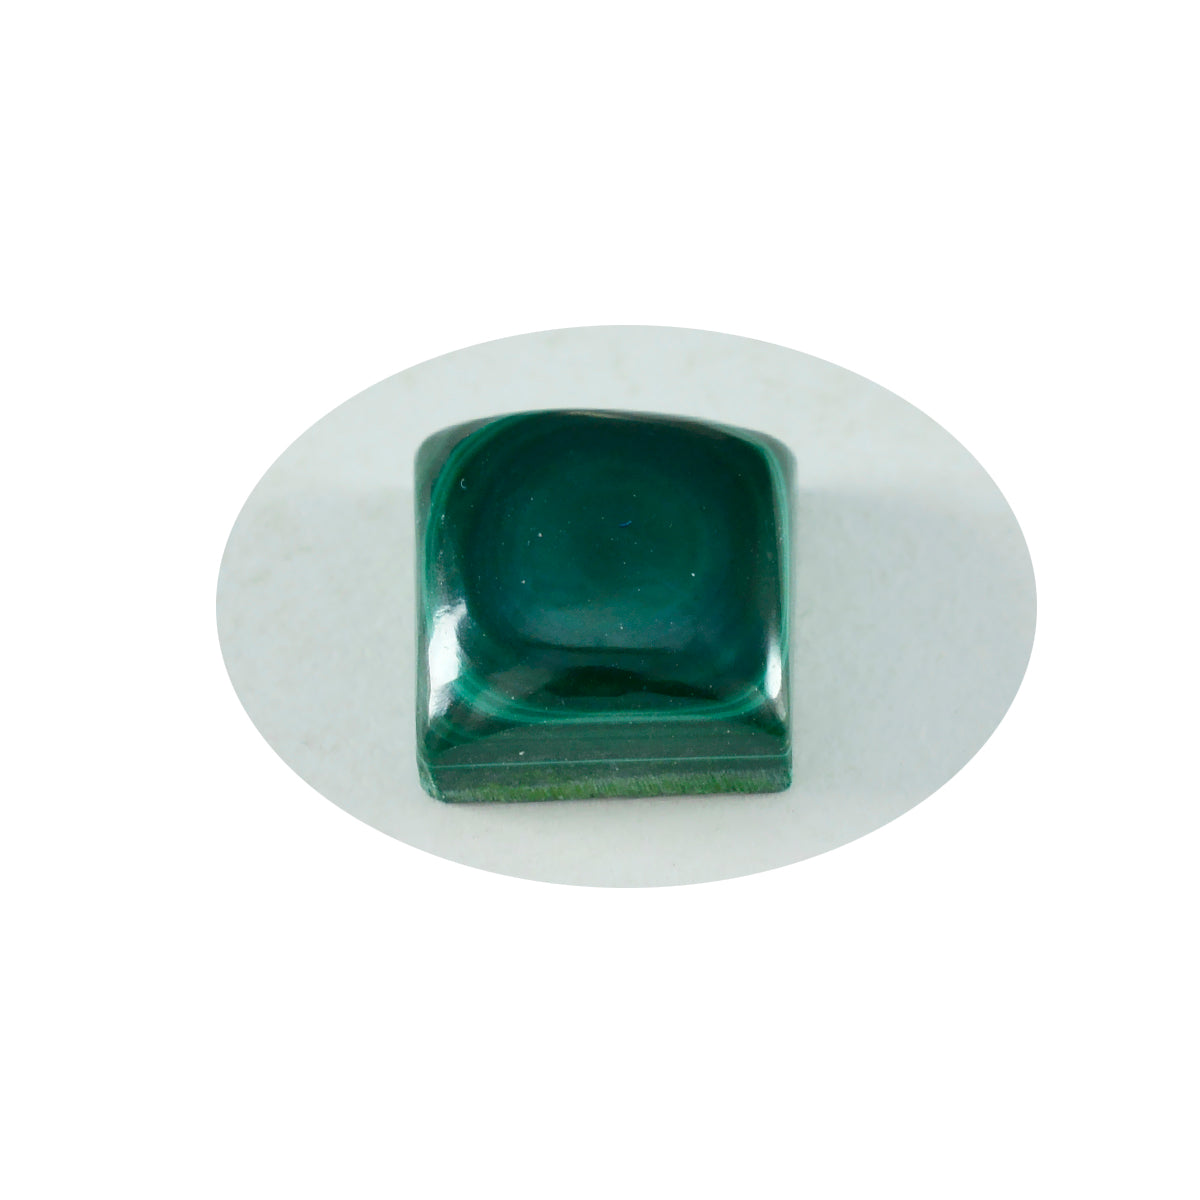 riyogems 1 cabochon de malachite verte 13x13 mm forme carrée a+1 qualité pierre précieuse en vrac